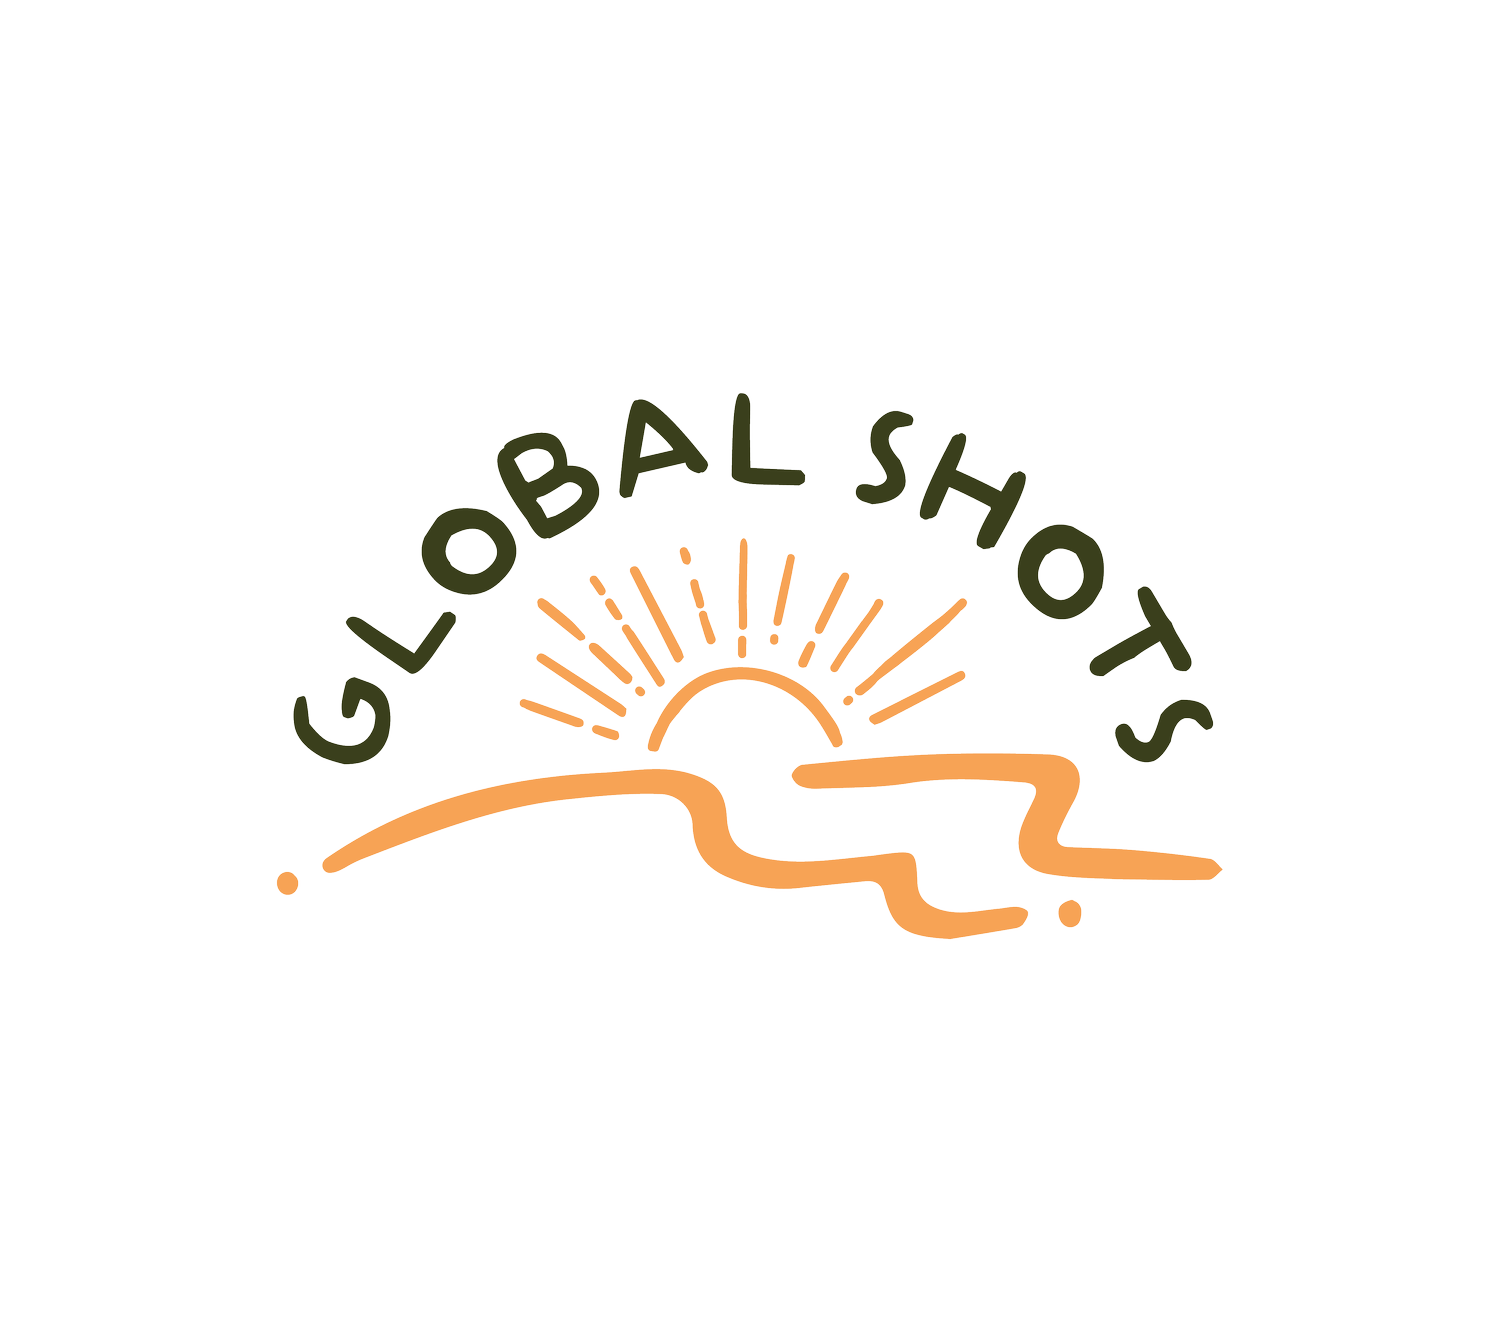 GlobalShots